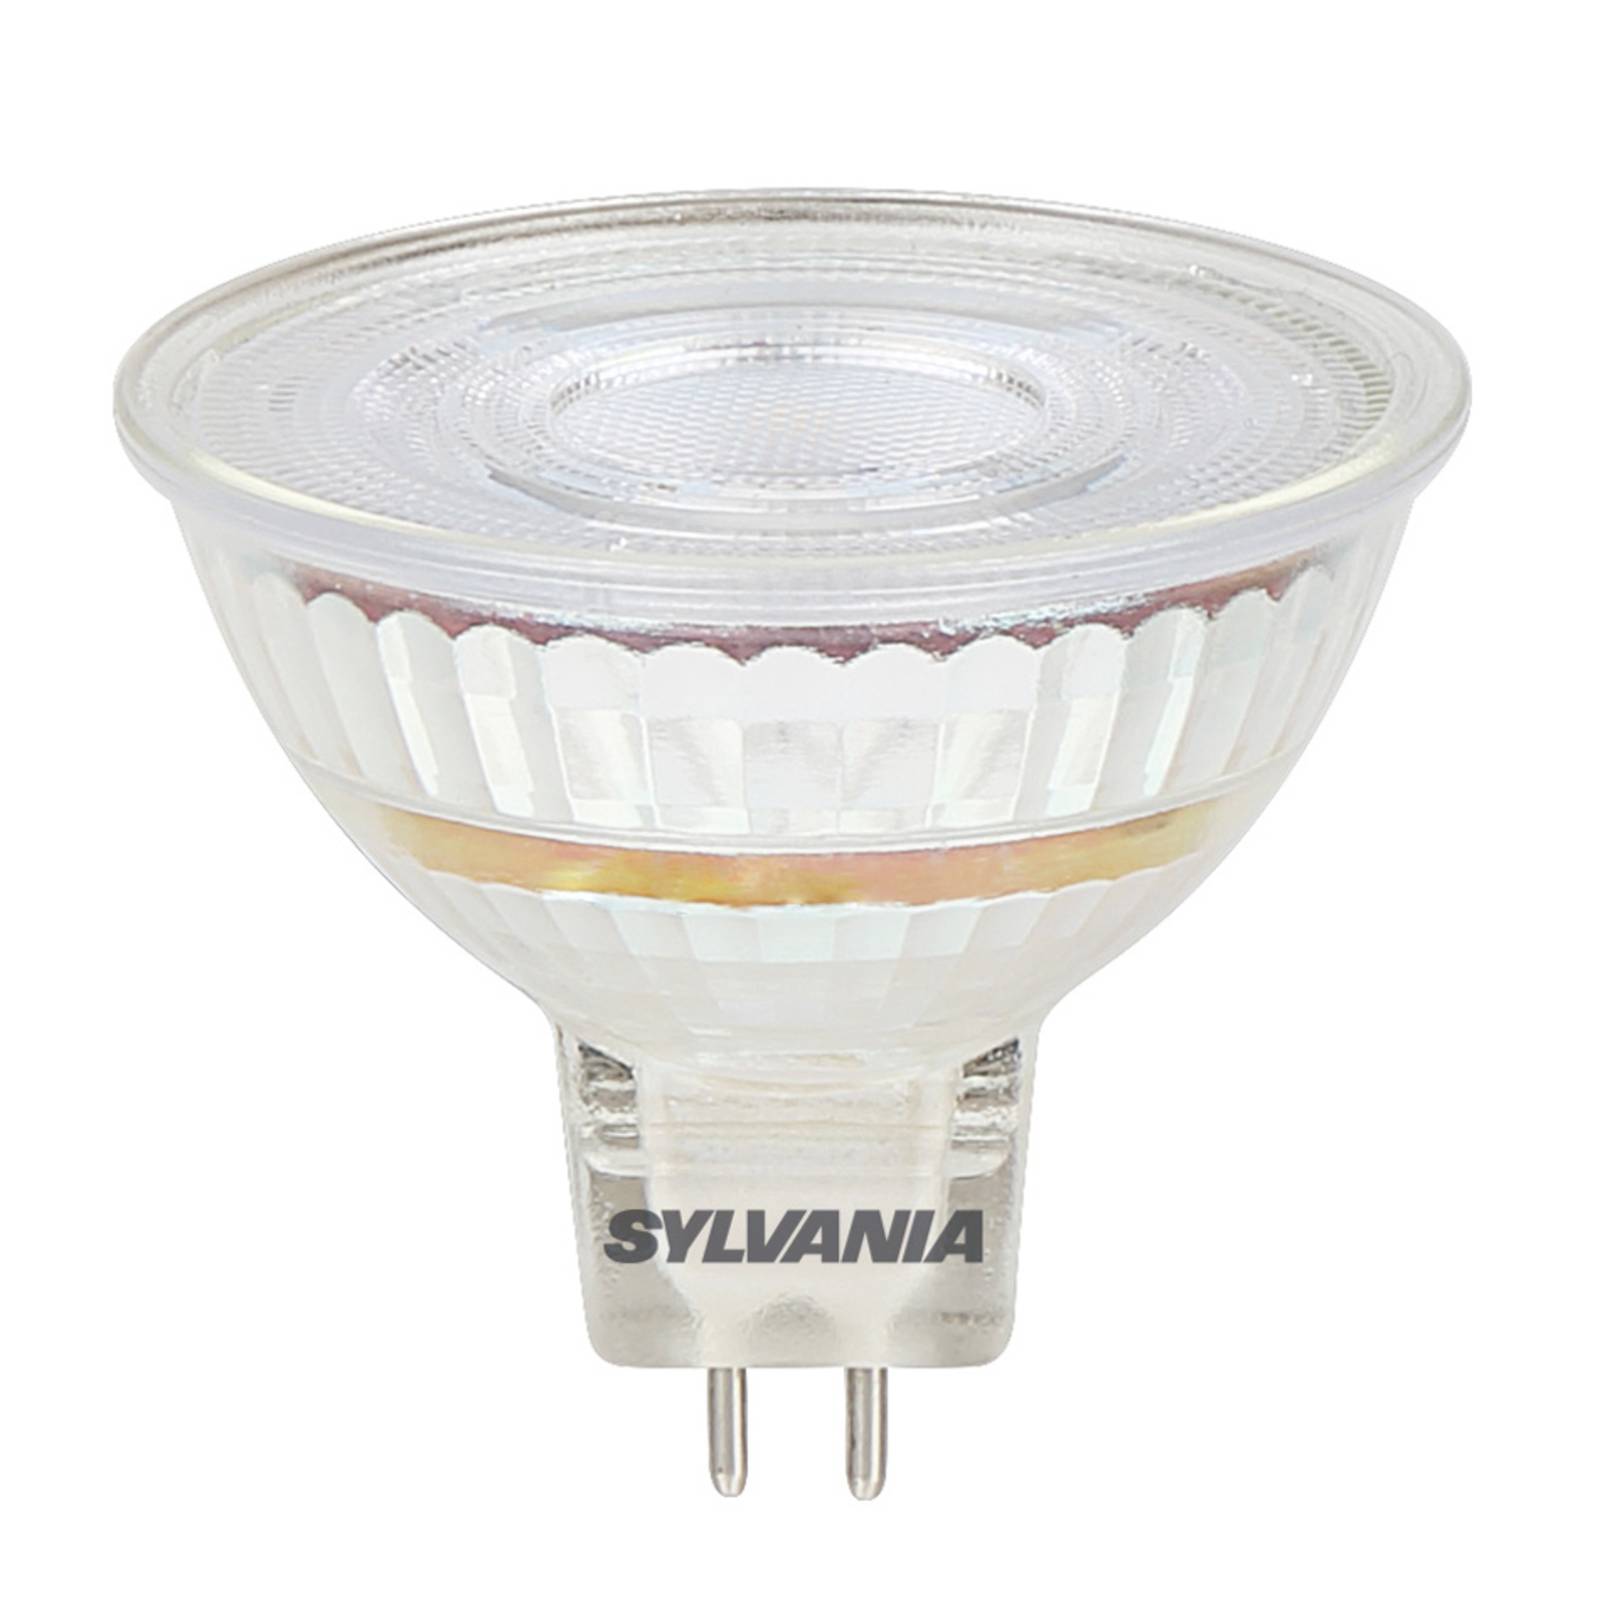 Photos - Light Bulb Sylvania Reflector LED bulb GU5.3 Superia MR16 4,4 W 4000 K 